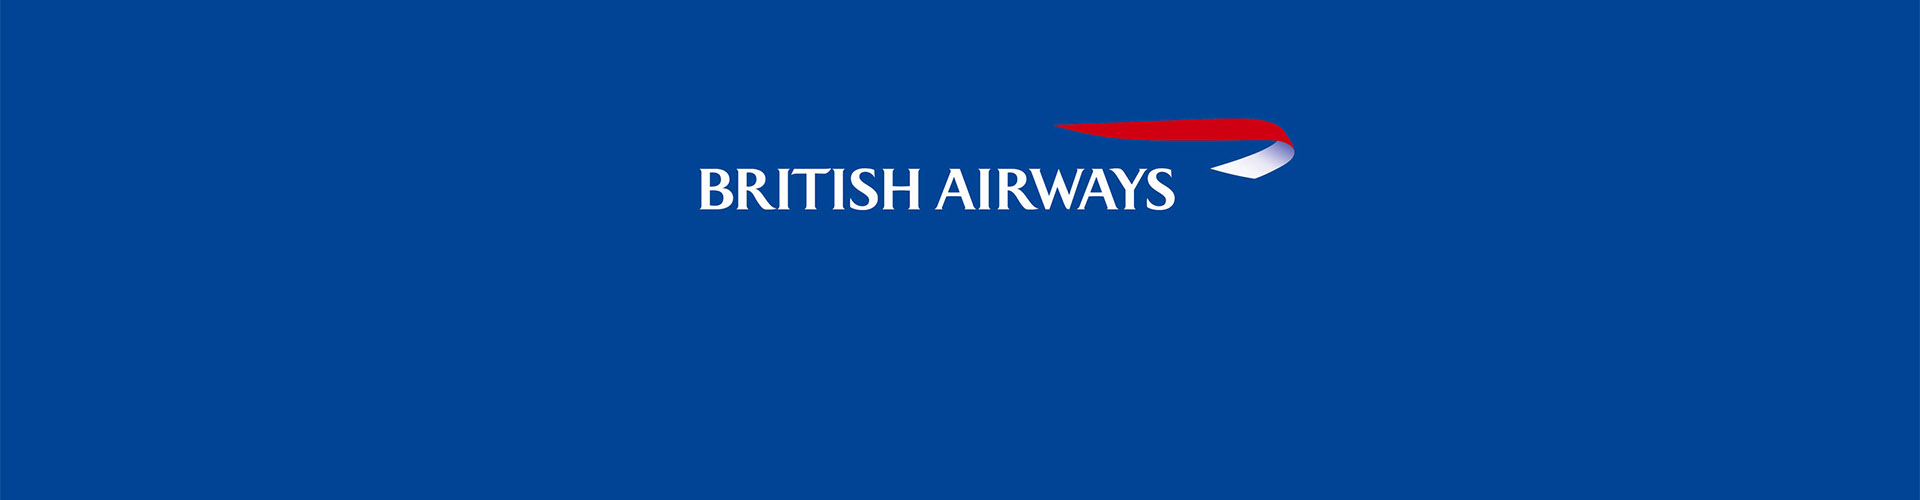 British Airways 英国航空画像2